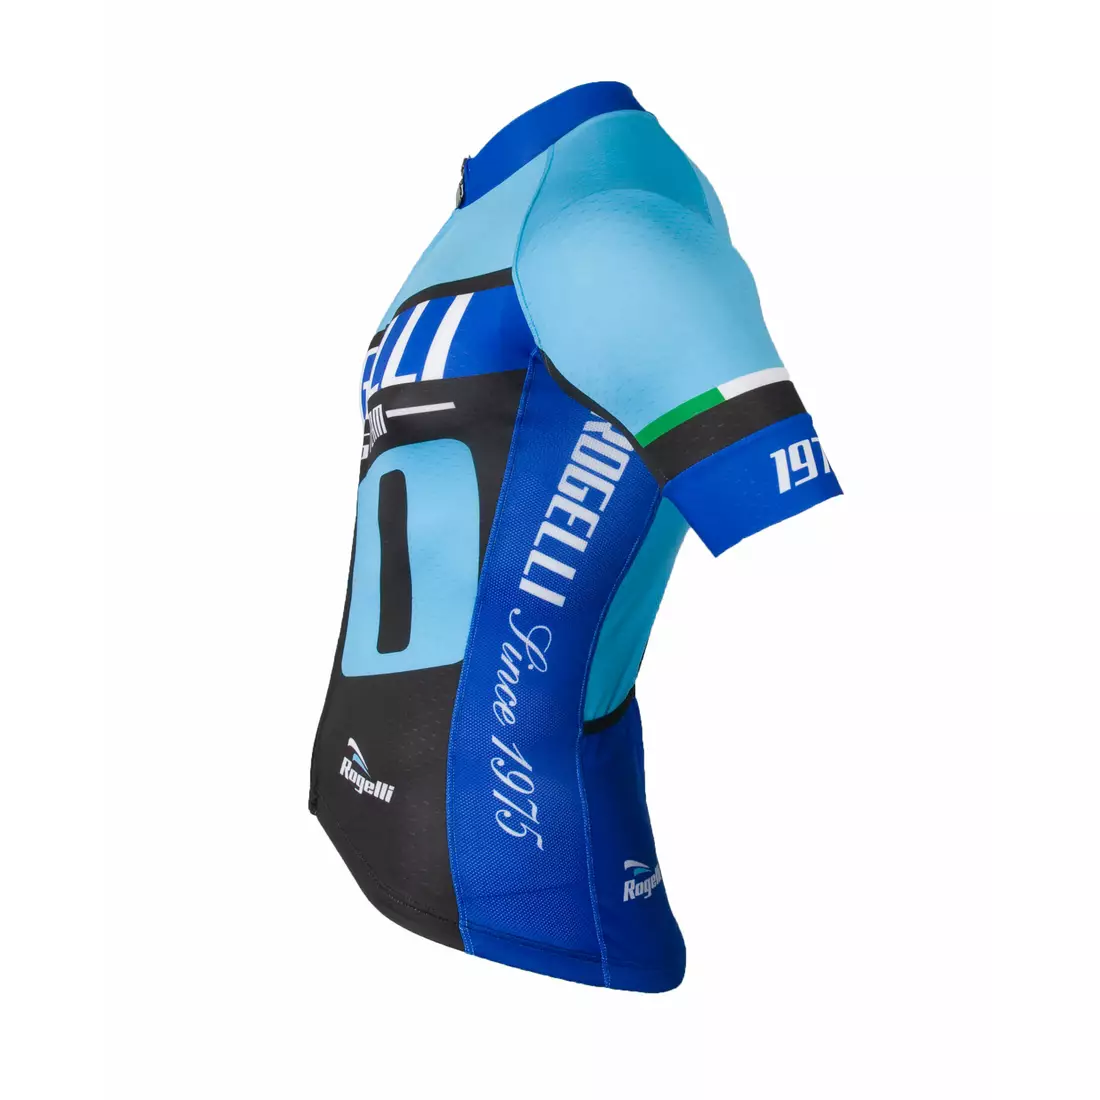 Cyklistický dres ROGELLI 40 ANNIVERSARY, modrý